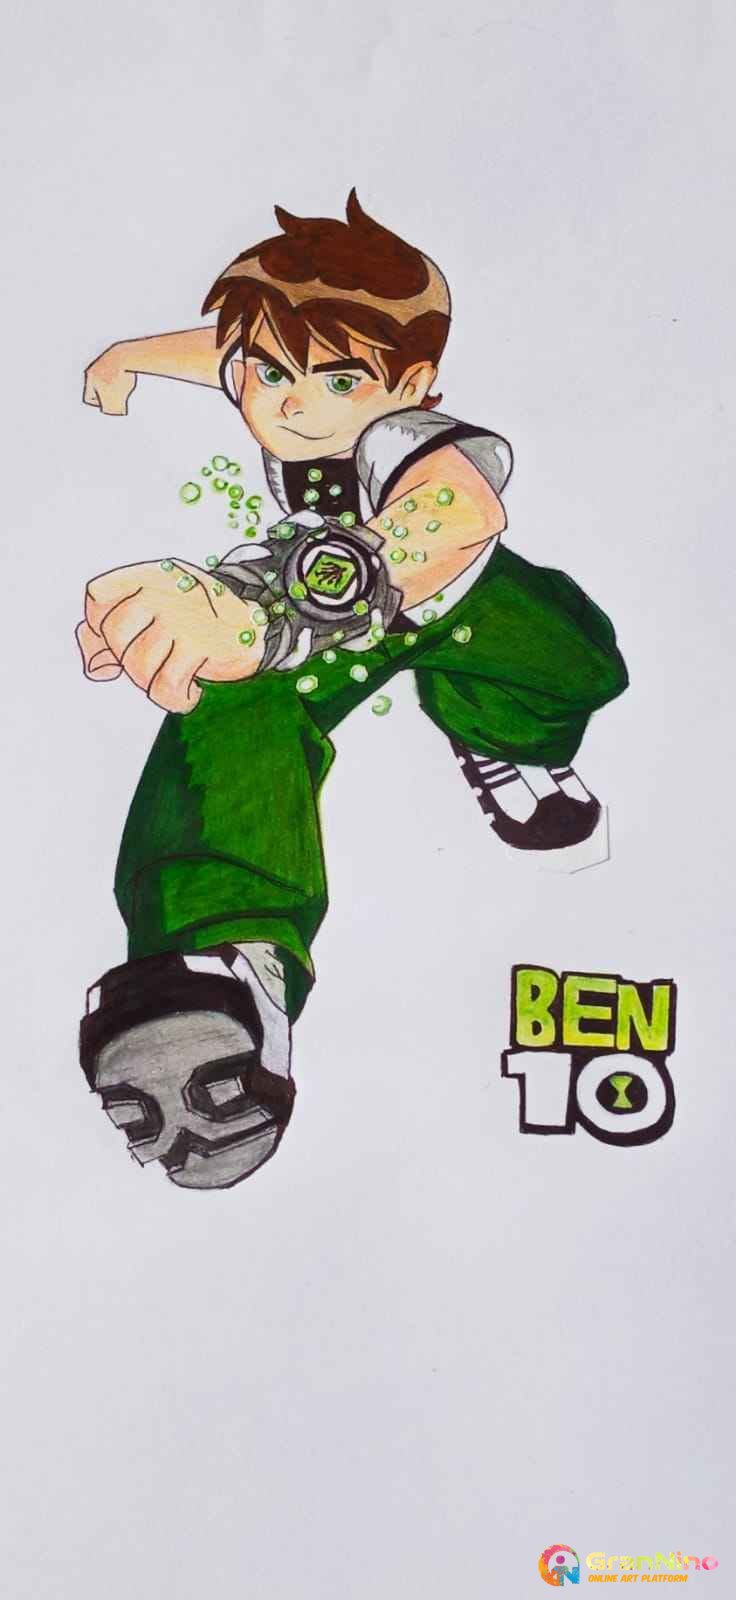 How to Draw Ben 10 || Drawing Ben 10 Ultimate Alien | How to Draw Ben 10 || Drawing  Ben 10 Ultimate Alien | By Kids ArtFacebook